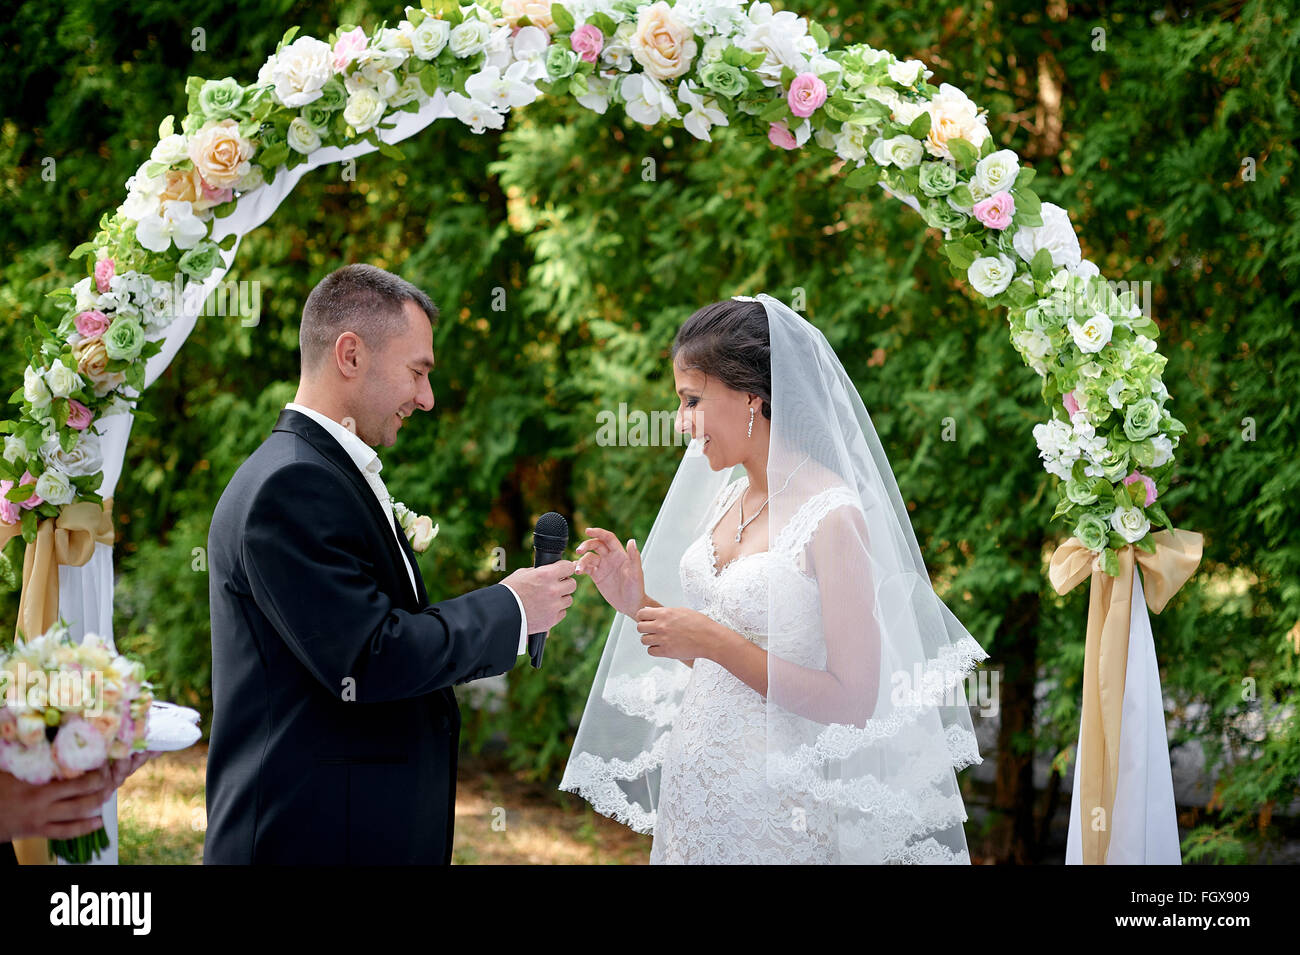 Sposa sposo abiti un anello su un dito in corrispondenza di una cerimonia di matrimonio Foto Stock